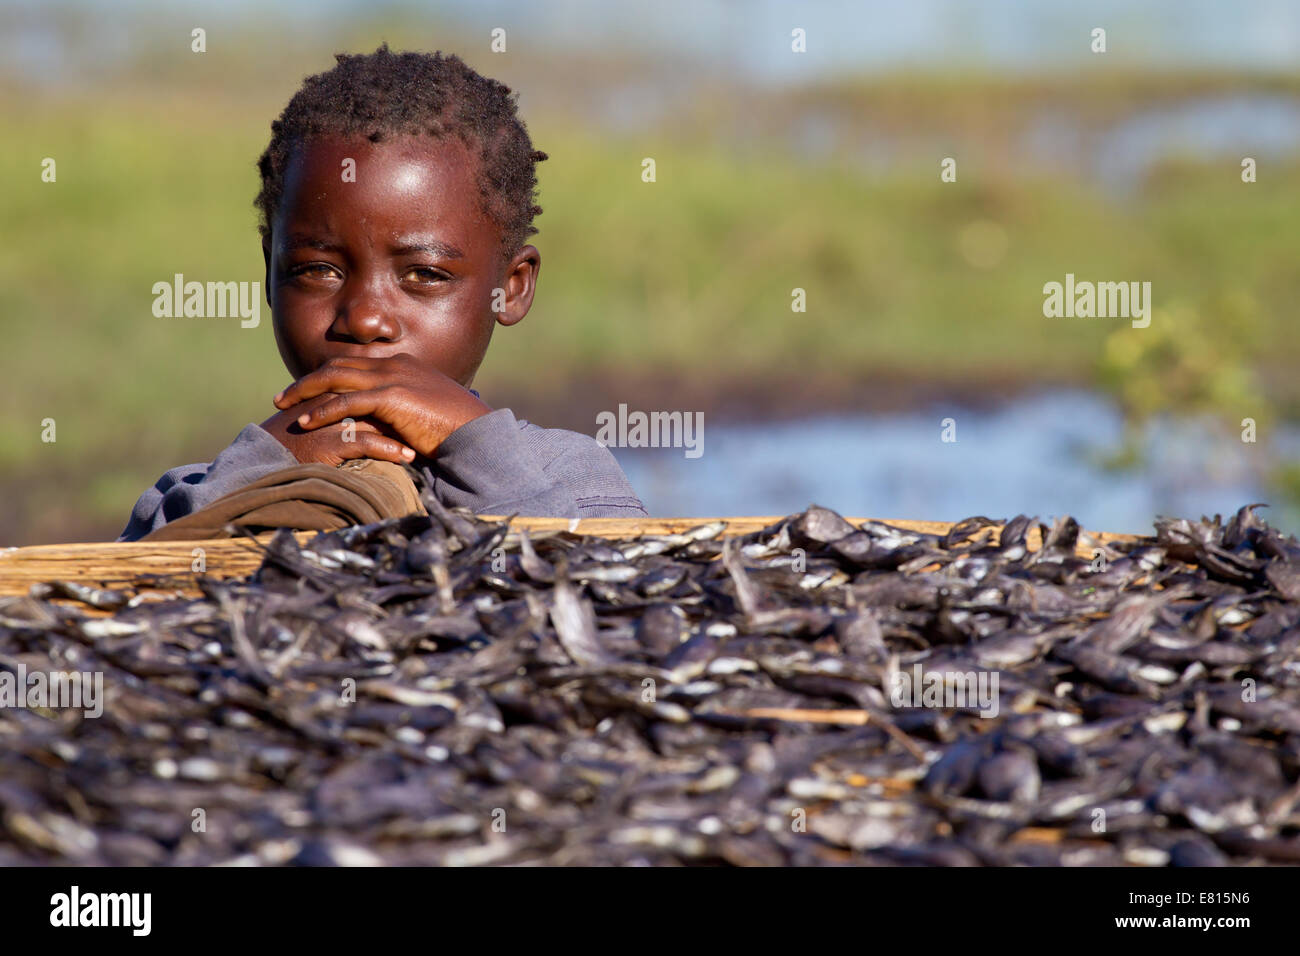 Un jeune enfant donne sur un rack de séchage du poisson dans un village de pêche dans les zones humides, la Zambie Bangweulu Banque D'Images